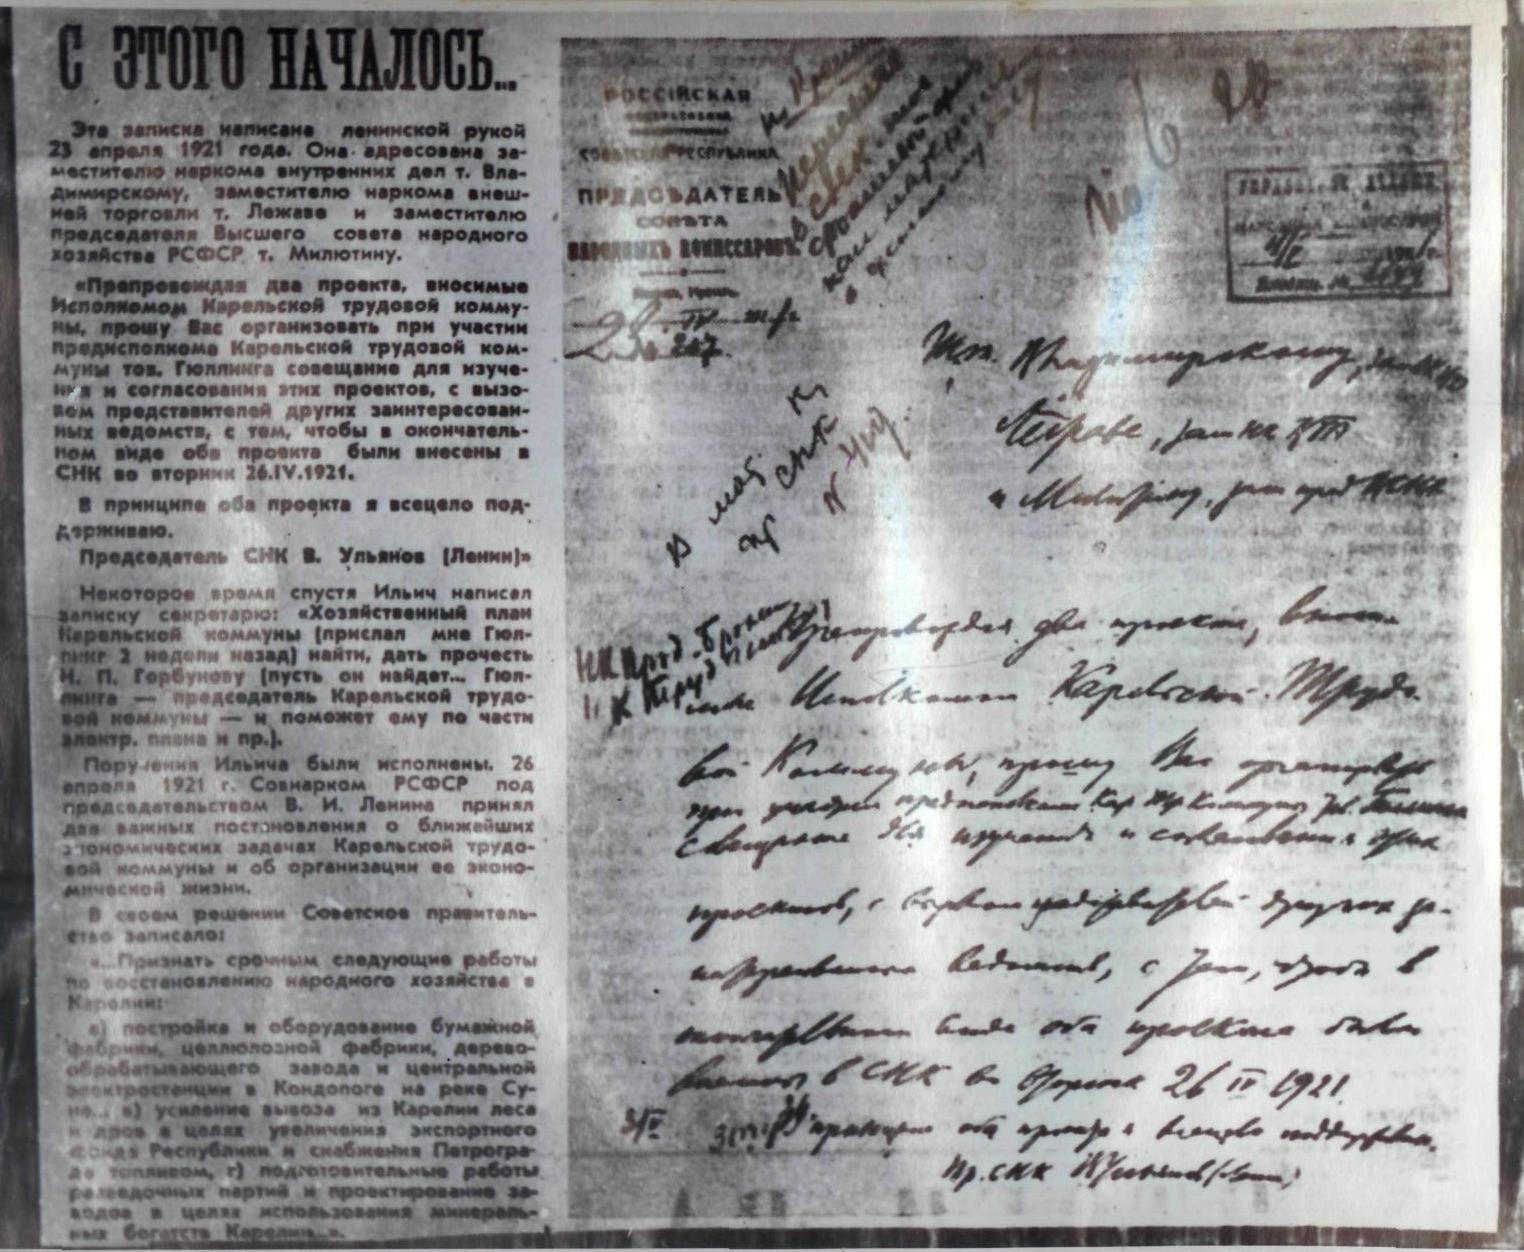 Копия записки с резолюцией В.И. Ленина: "В принципе оба проекта я всецело поддерживаю. В. Ульянов (Ленин)"